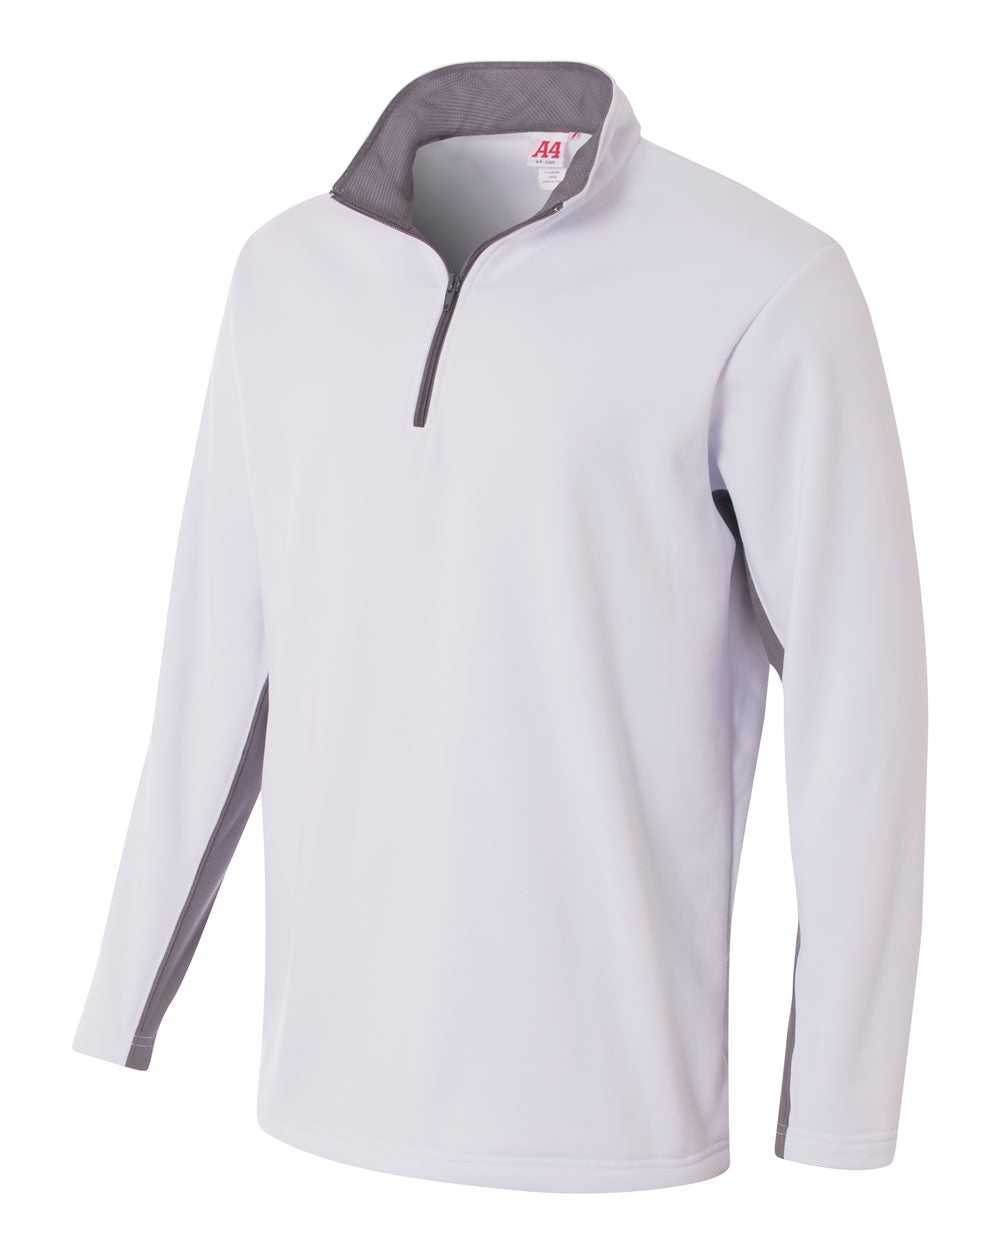 A4 N4246 1/4 Zip Color Block Fleece Jacket - White Graphite - HIT a Double